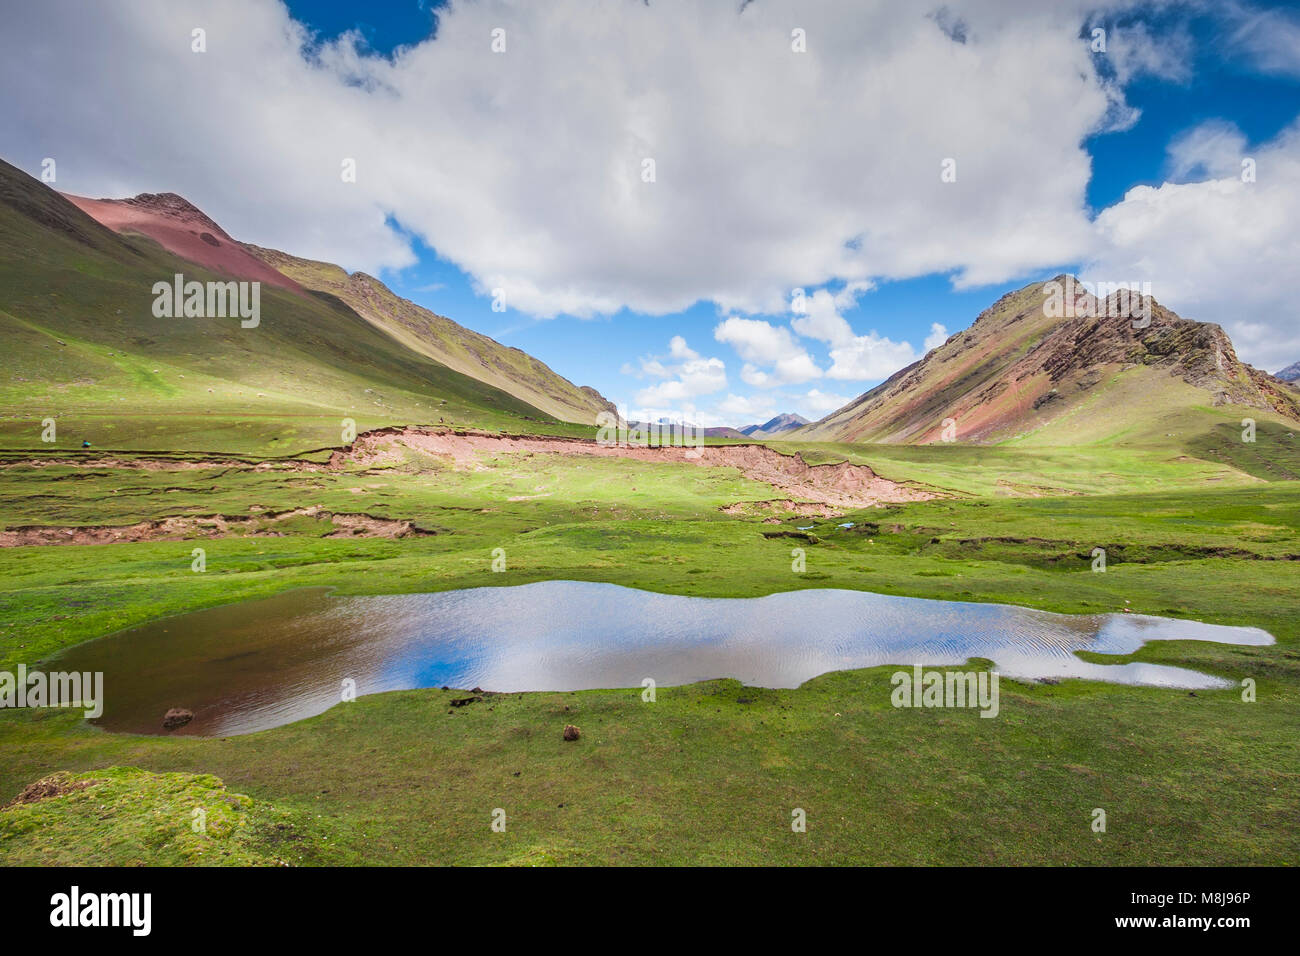 Las impresionantes vistas del paisaje de los andes peruanos en el camino hasta la montaña del arco iris Foto de stock